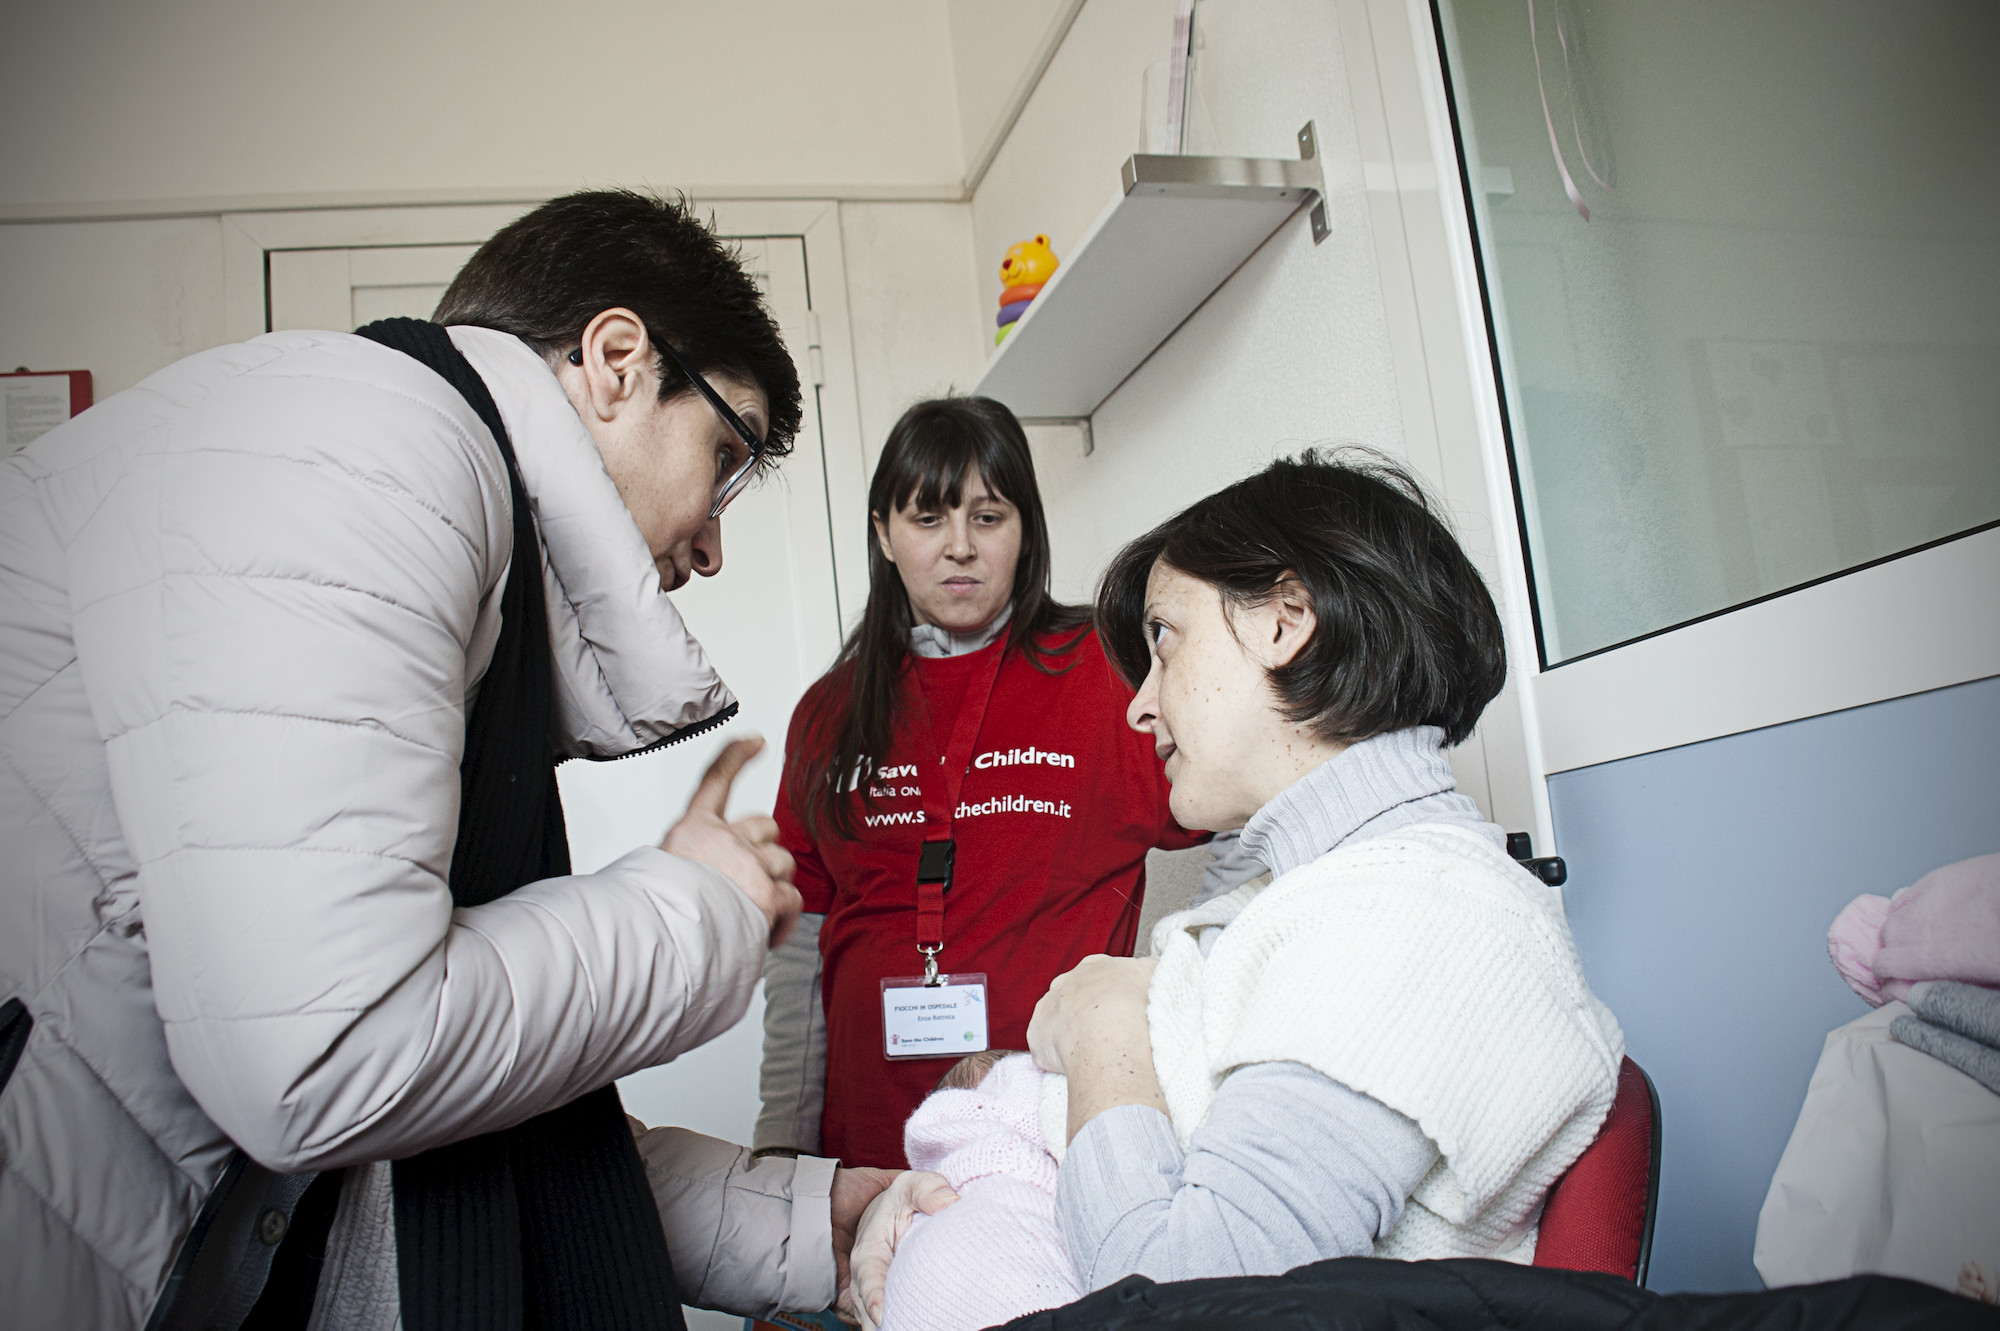 Mamme e bambini supportati all'interno del progetto Fiocchi in Ospedale di Save the Children, avviato all'interno dell'Ospedale Niguarda Ca' Granda di Milano.